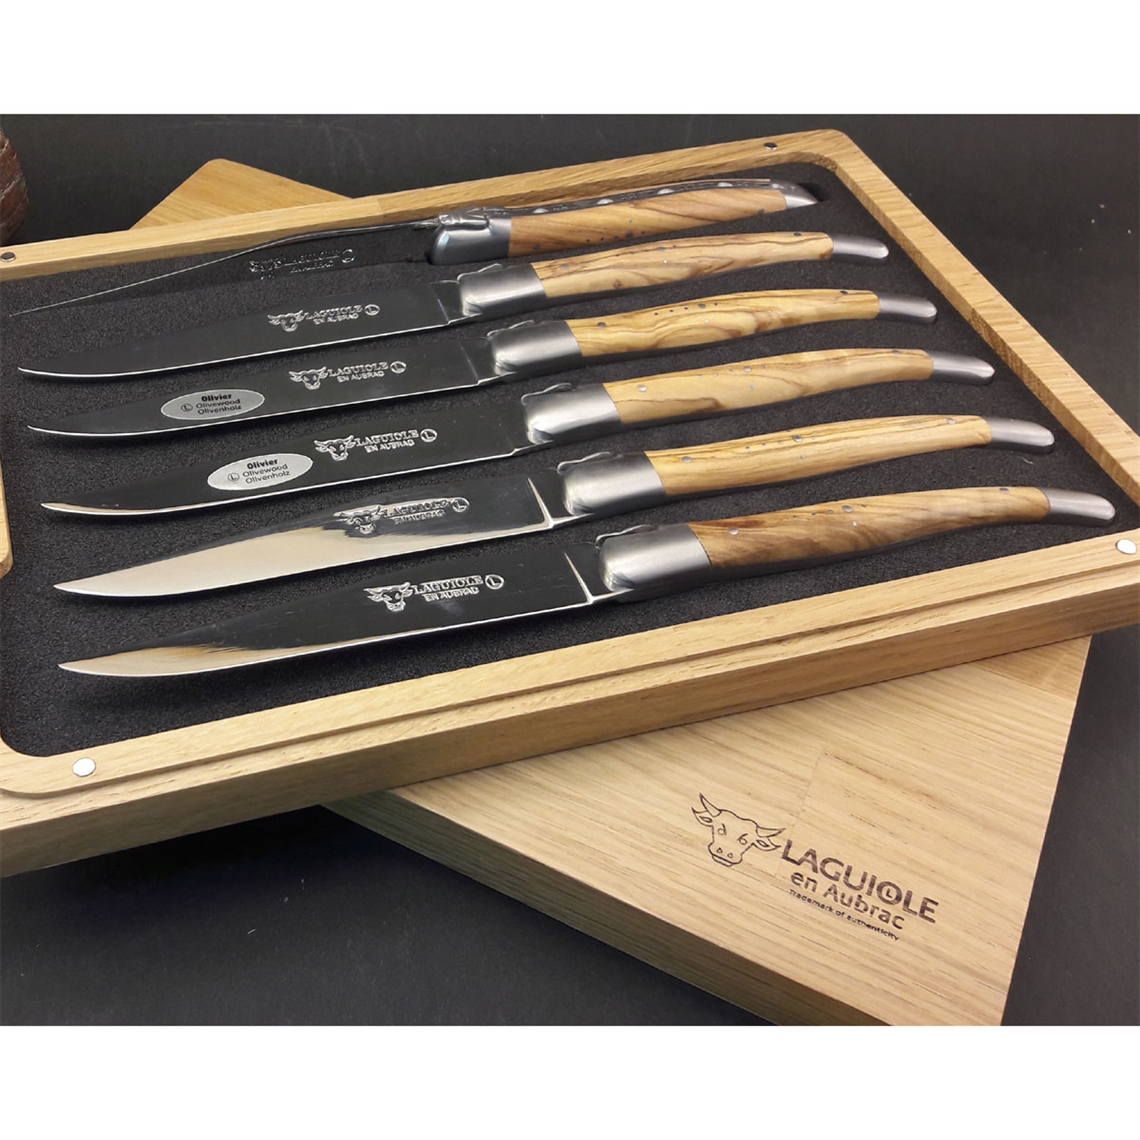 Laguiole en Aubrac 6 Piece Steak Knives Set - Olive Wood Handles